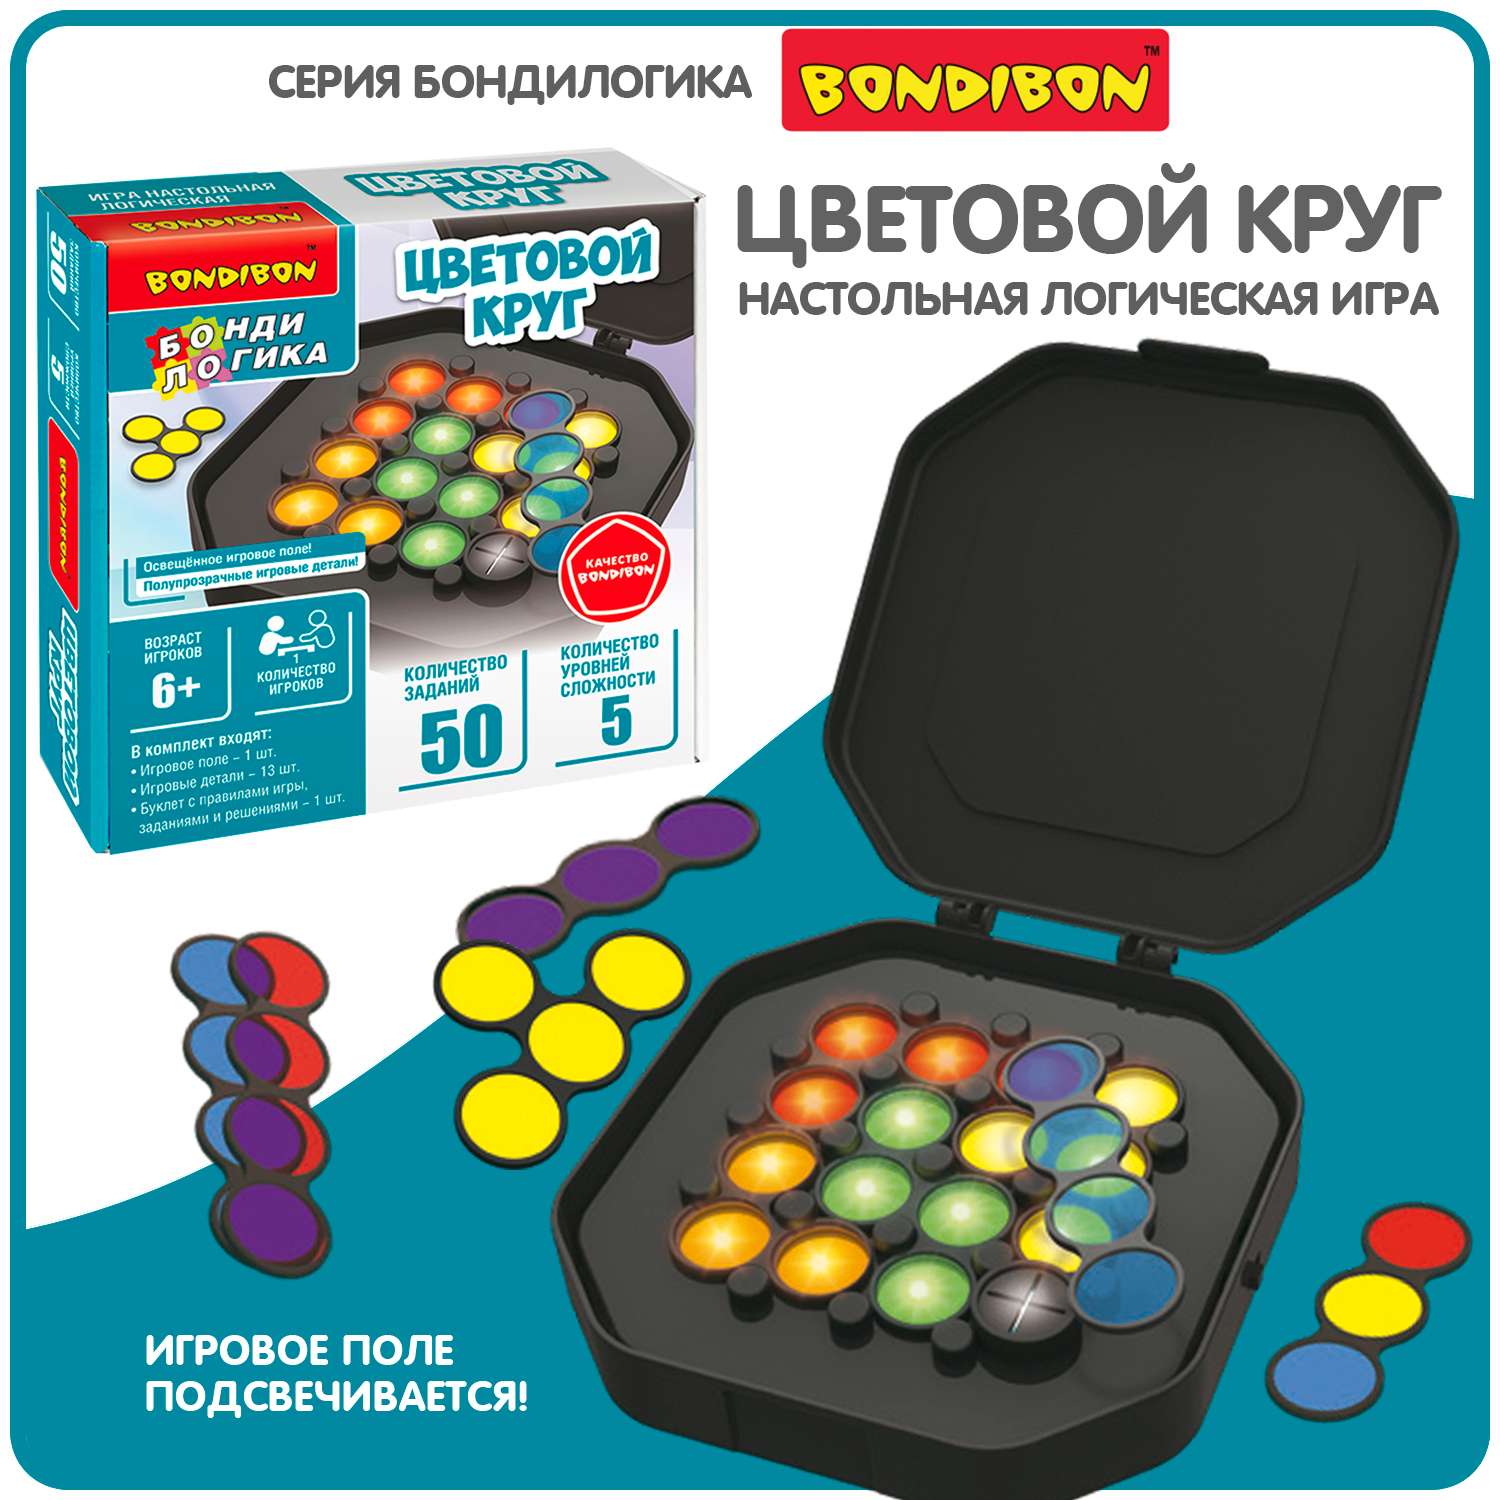 Настольная логическая игра BONDIBON развивающая головоломка Цветовой Круг серия БондиЛогика - фото 1